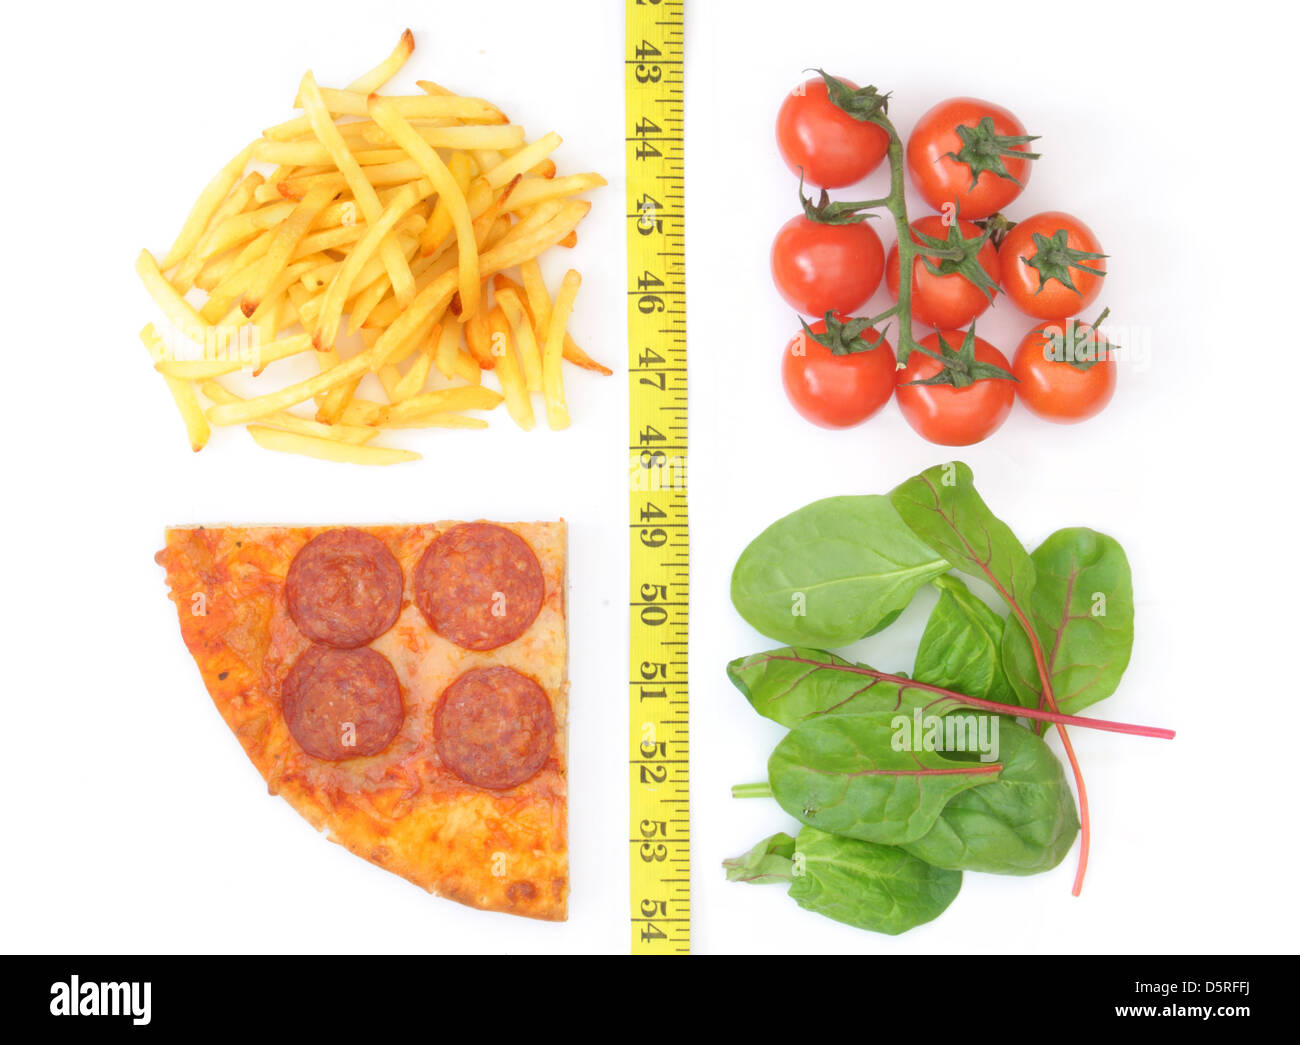 Gute und schlechte Ernährungsgewohnheiten getrennt mit einem Maßband. Französisch frites und Pizza auf der einen Seite, Tomaten und Salat auf der anderen Stockfoto